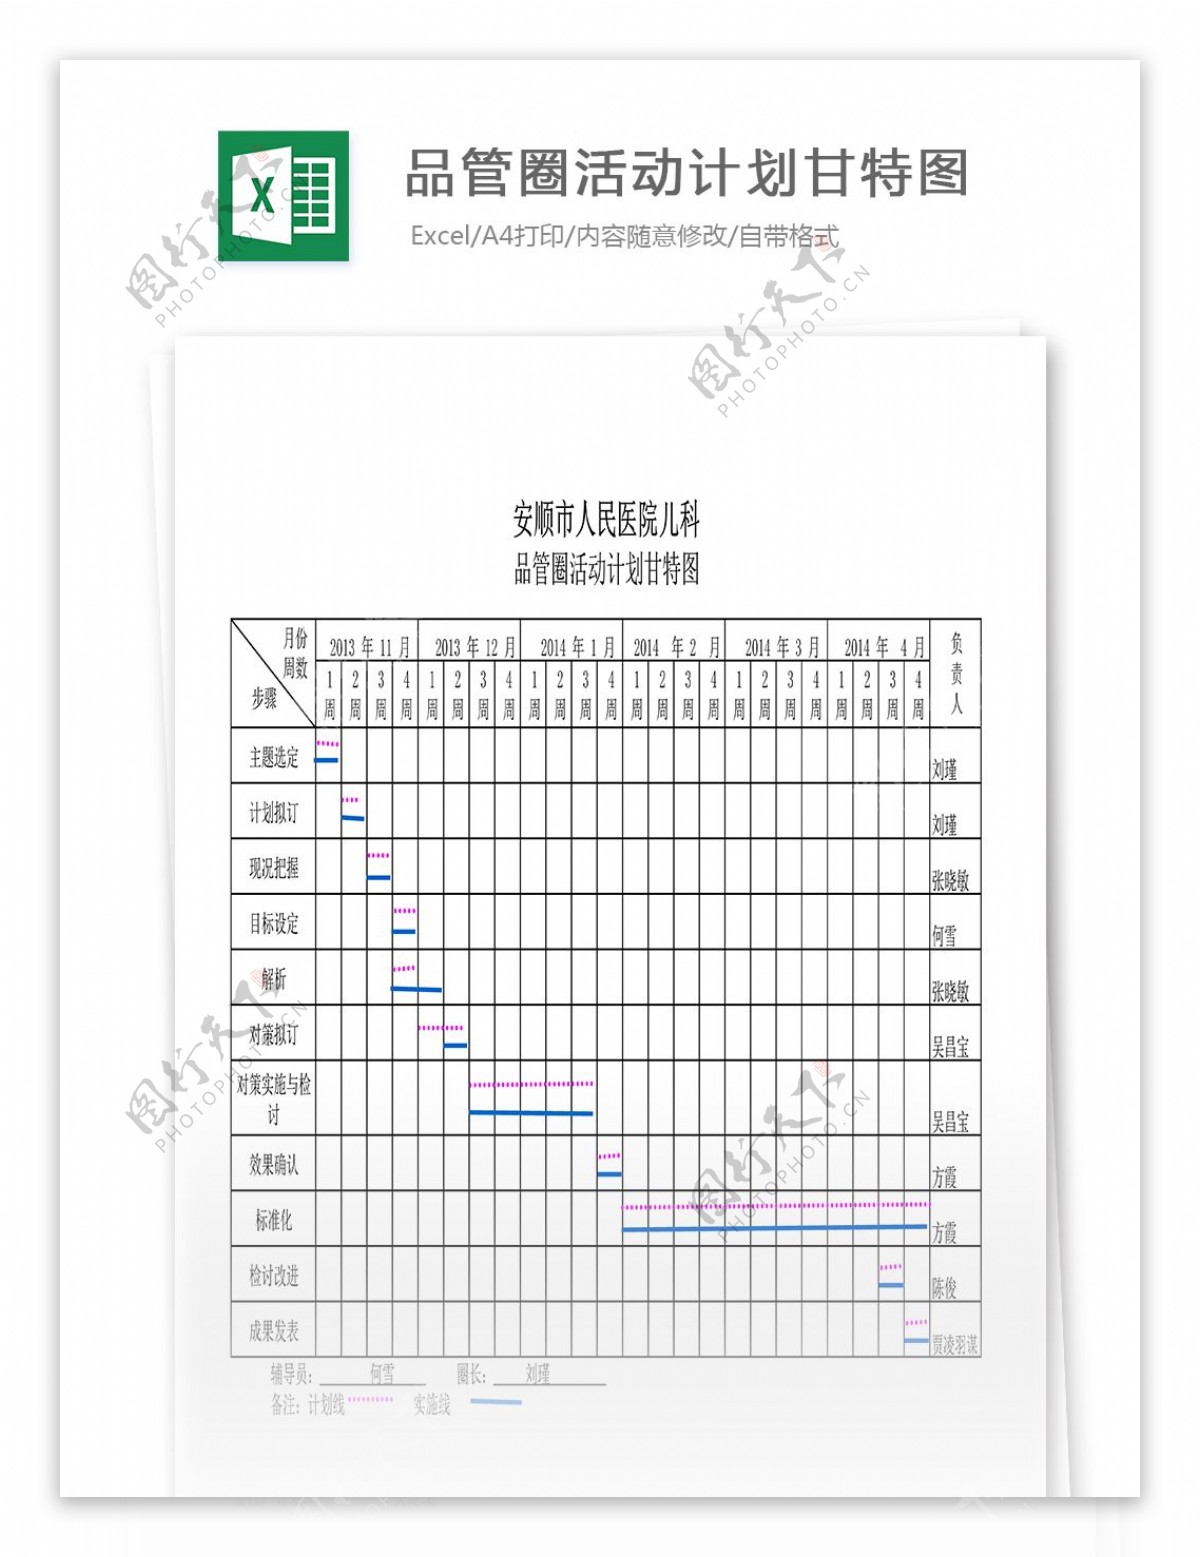 品管圈活动计划甘特图Excel表格模板